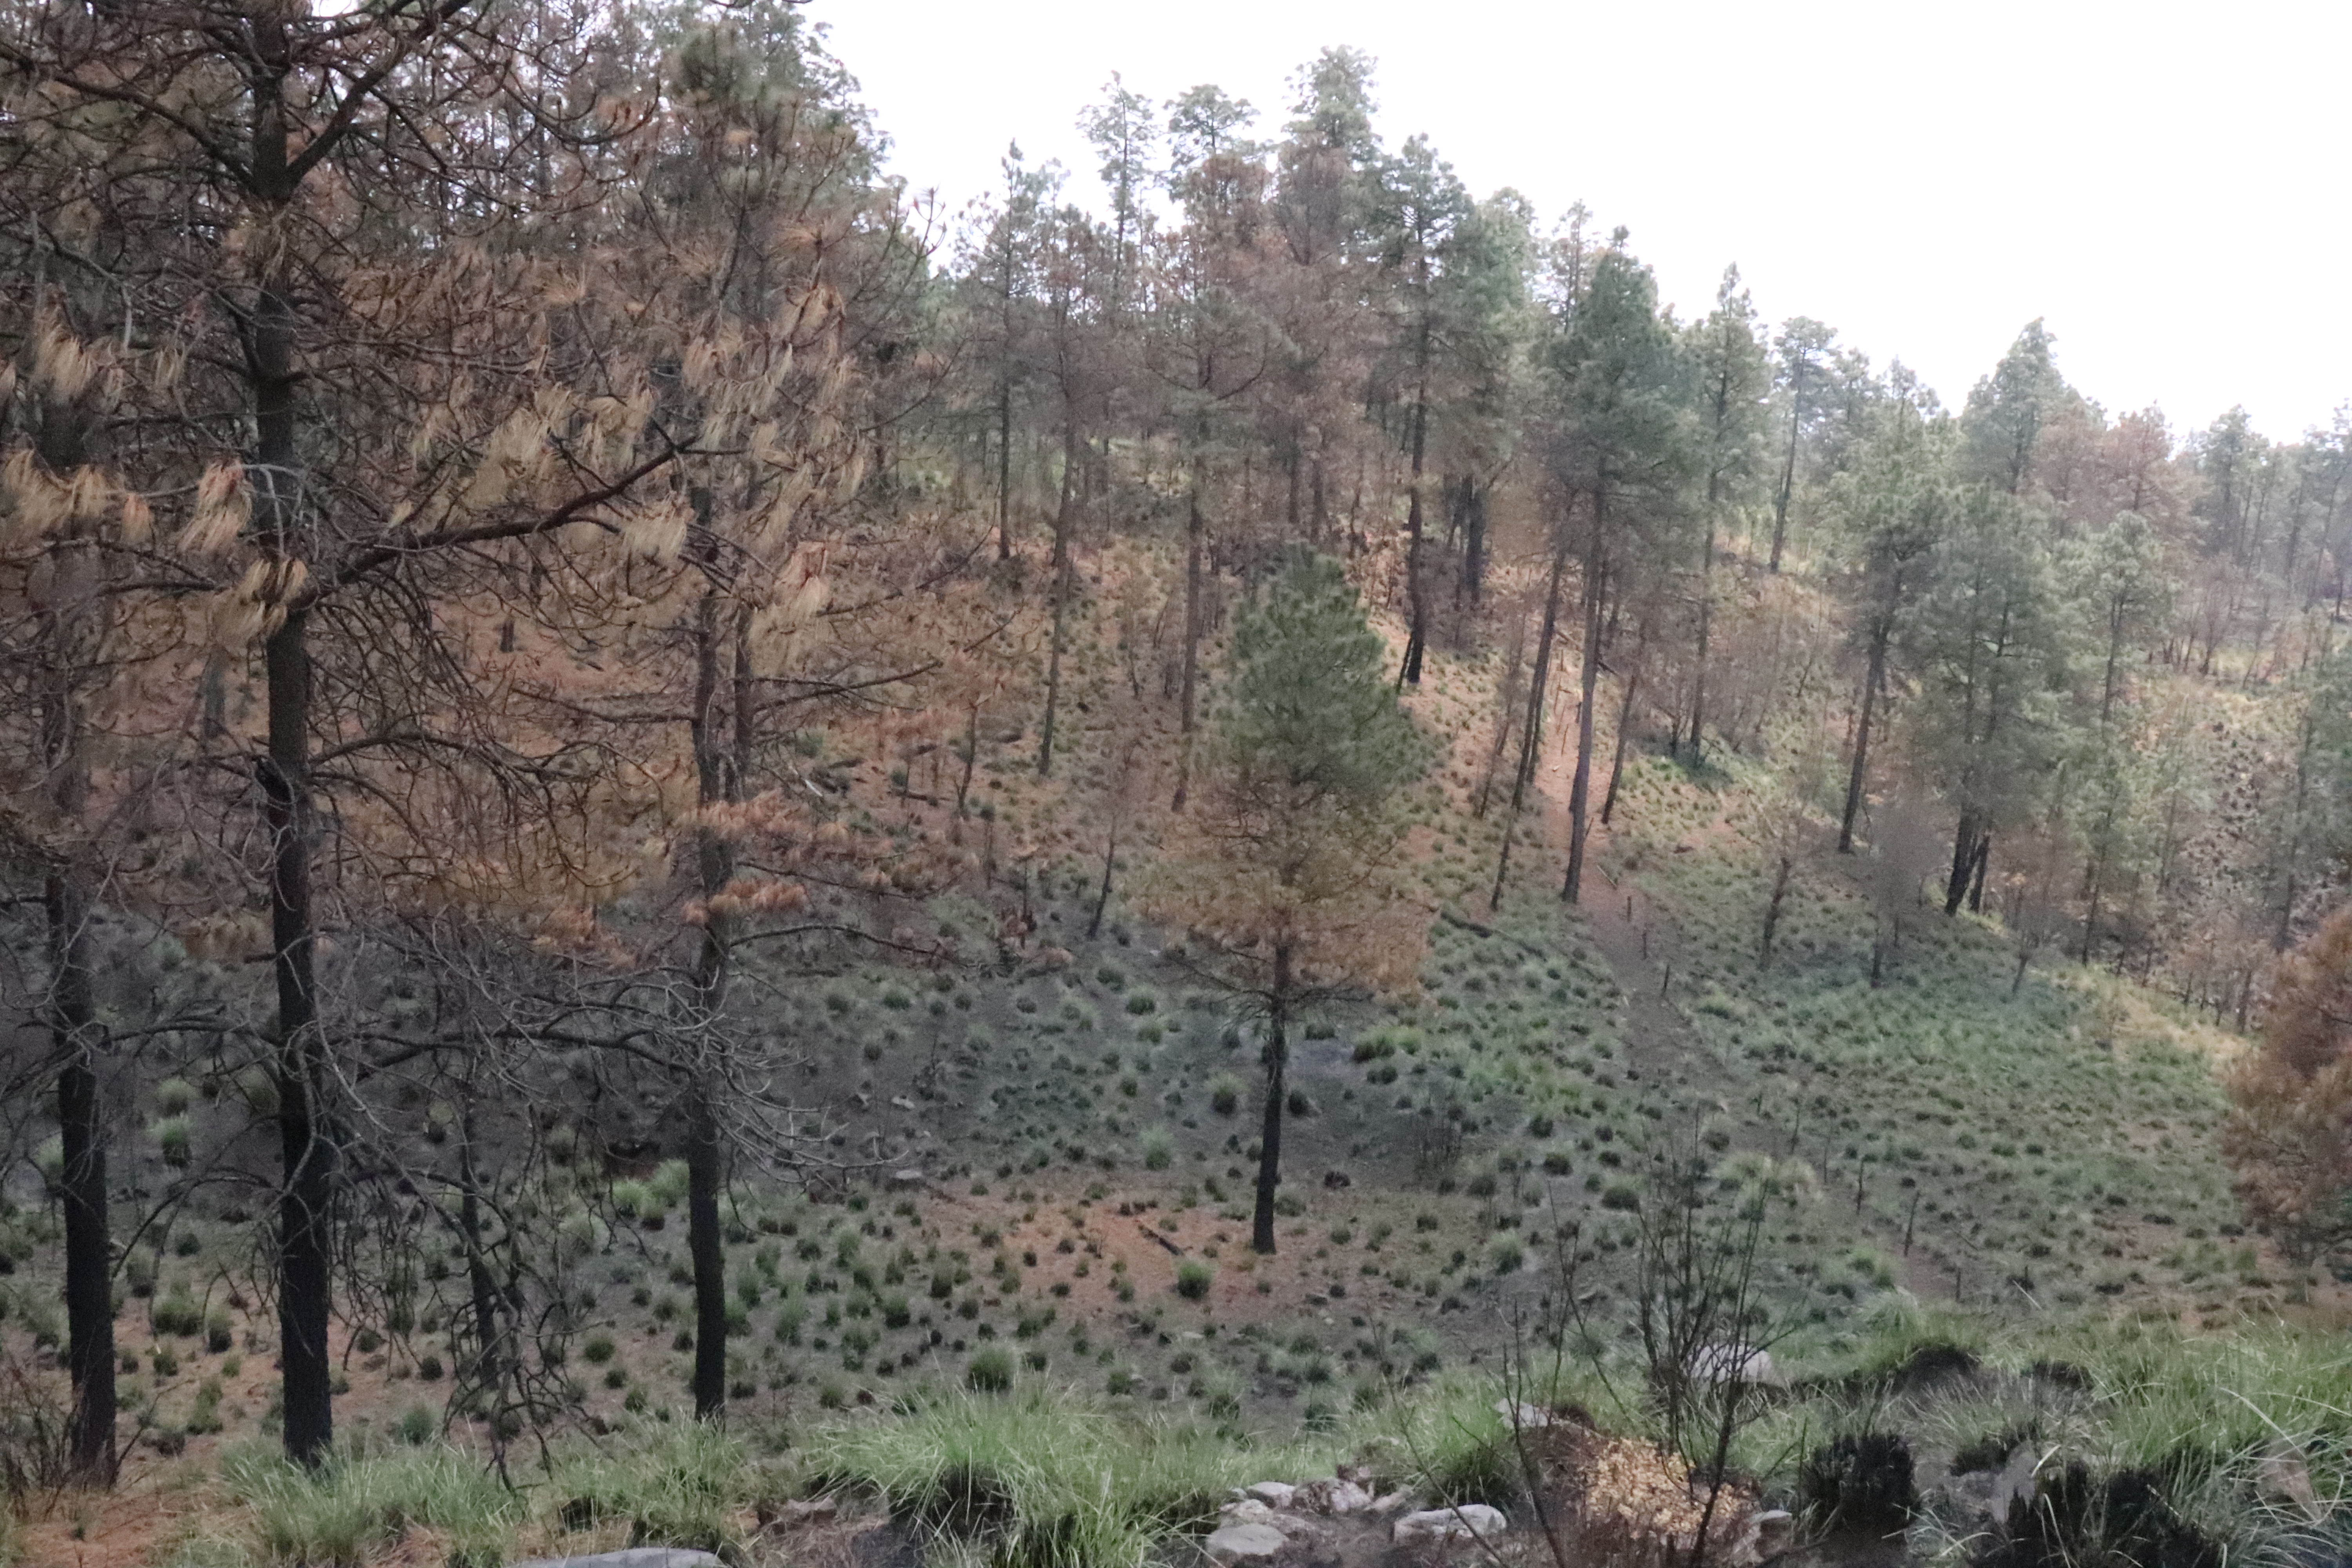 Paraje que sufrió un fuego forestal el año pasado. Los zacates, aún negros en el centro, ya se muestran verdes, así como los brotes de algunos árboles. La carga de combustible es baja, y no hay ningún tipo de vegetación que no pertenezca al ecosistema. Fotografía del autor